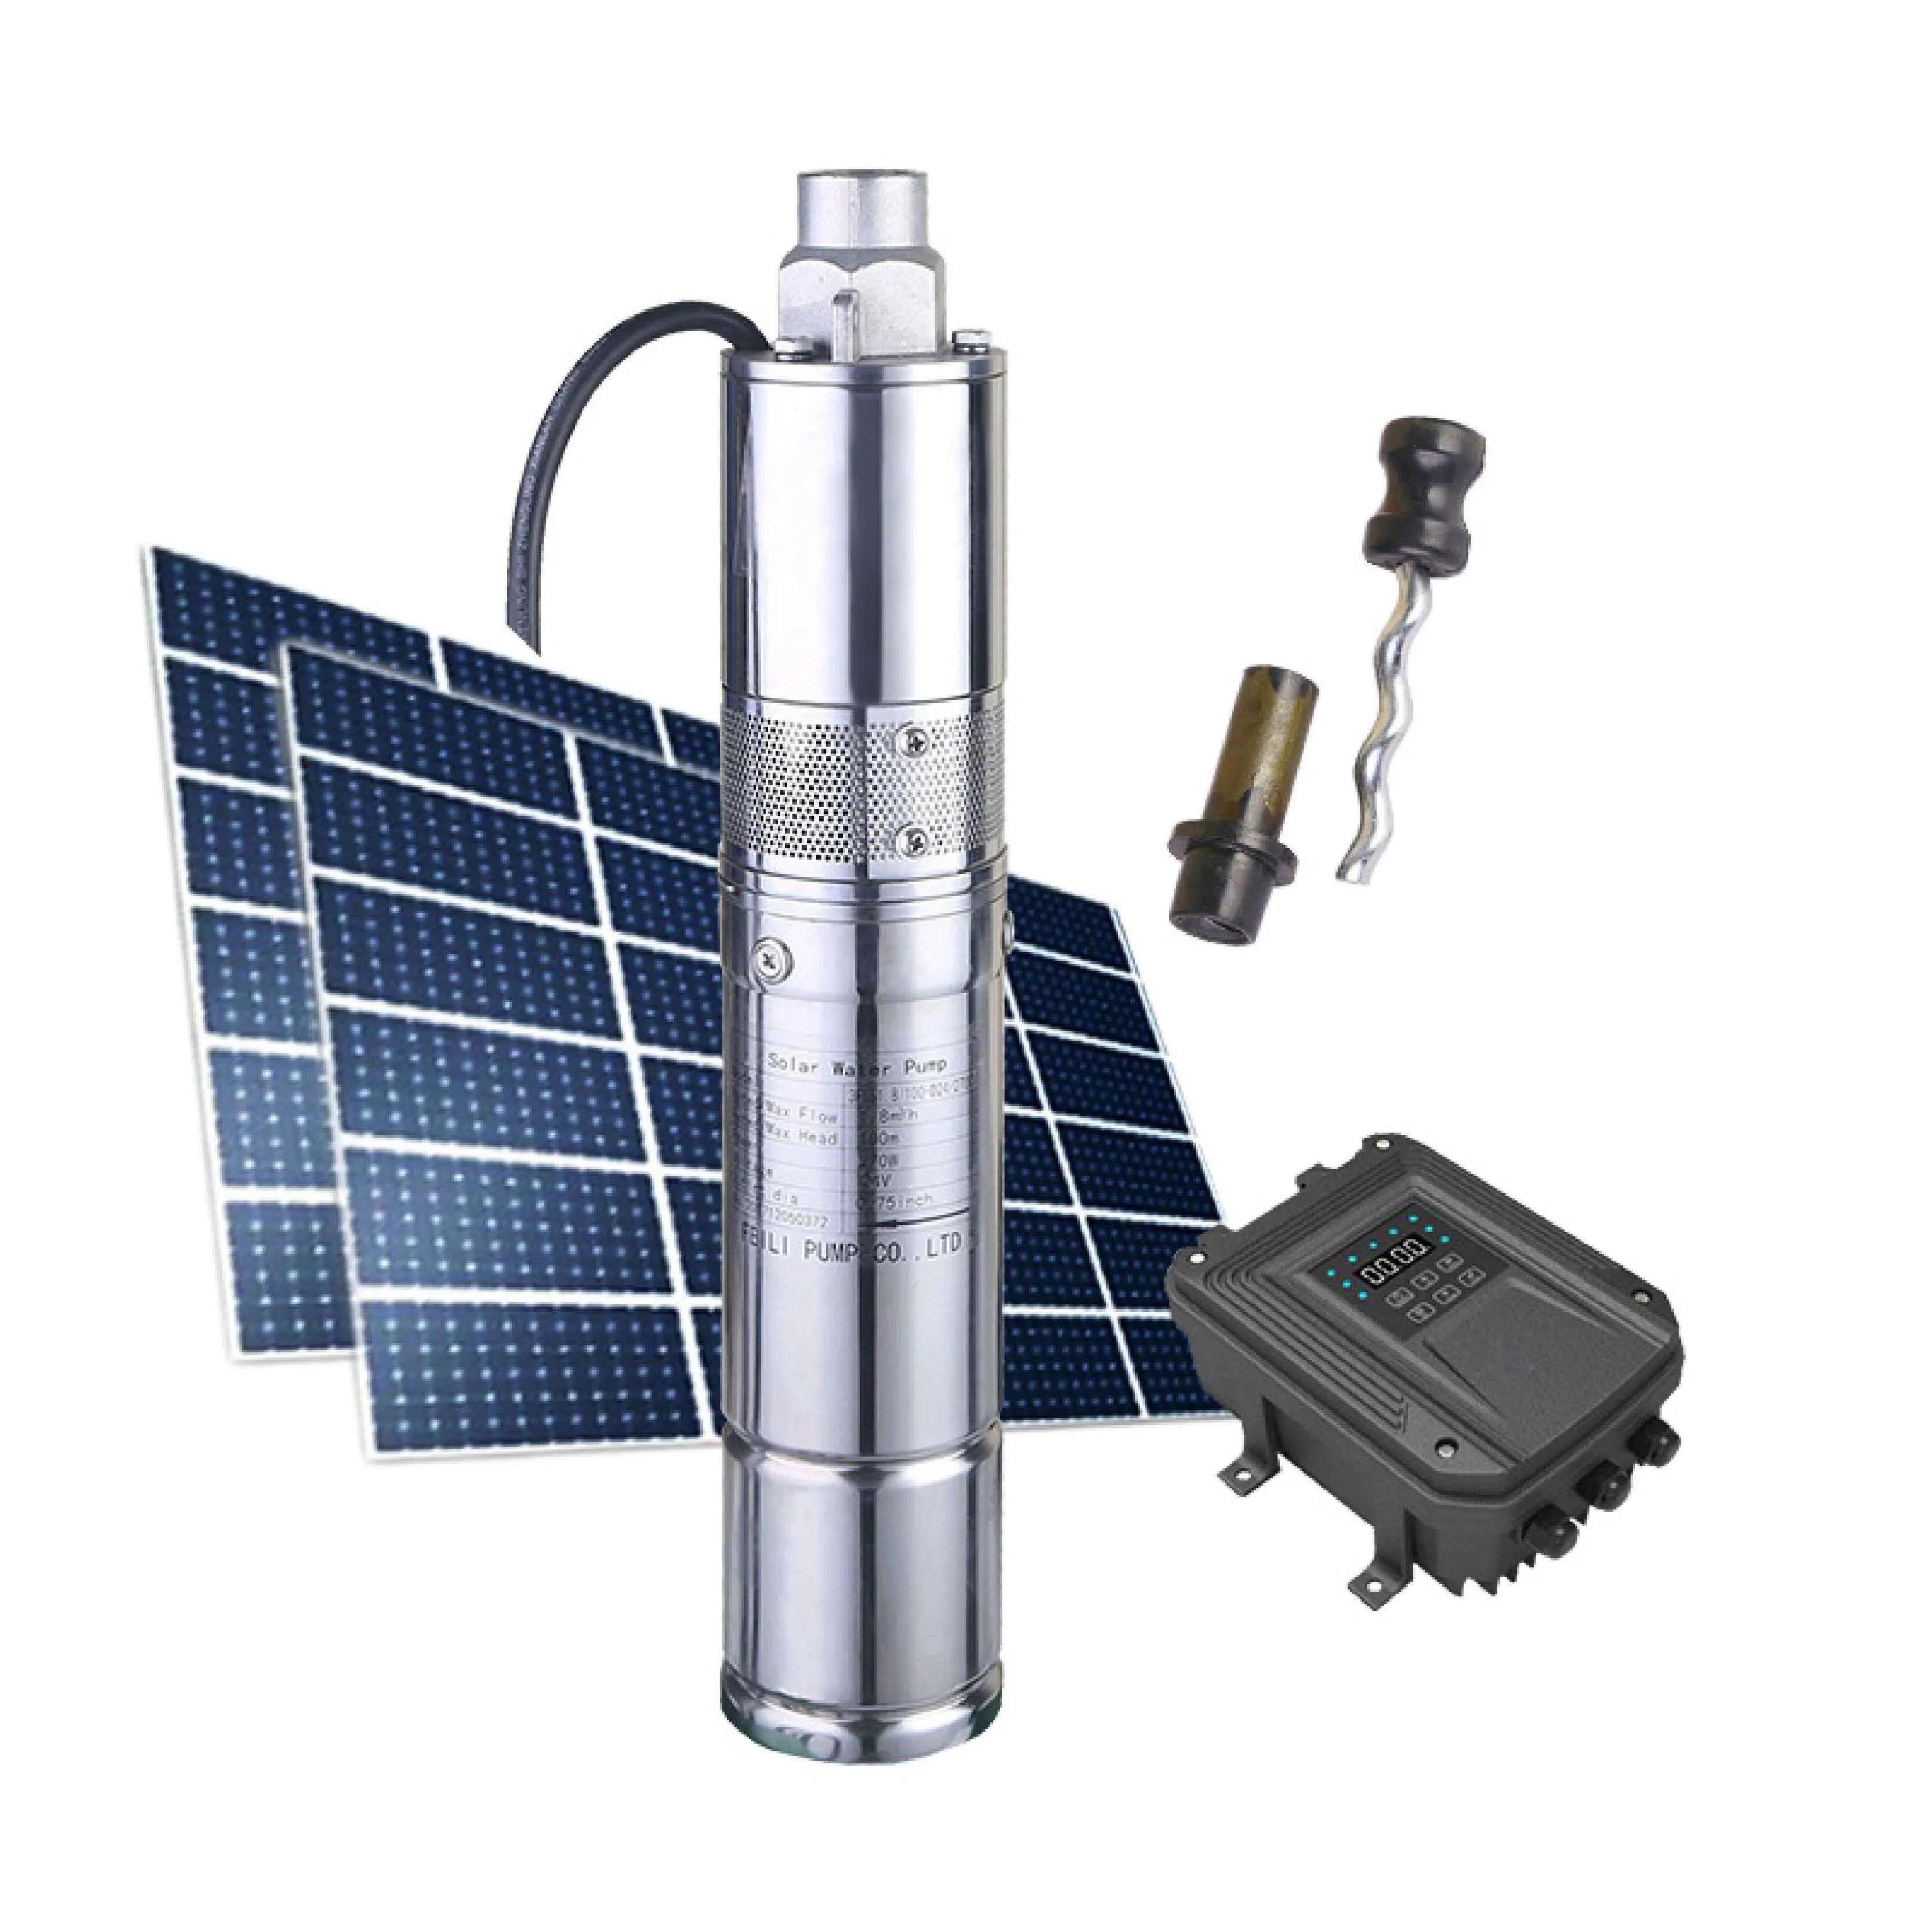 Pompe à eau solaire flottante pour panneaux solaires, usage robuste, 0,5 hp, kit de pompe de puits